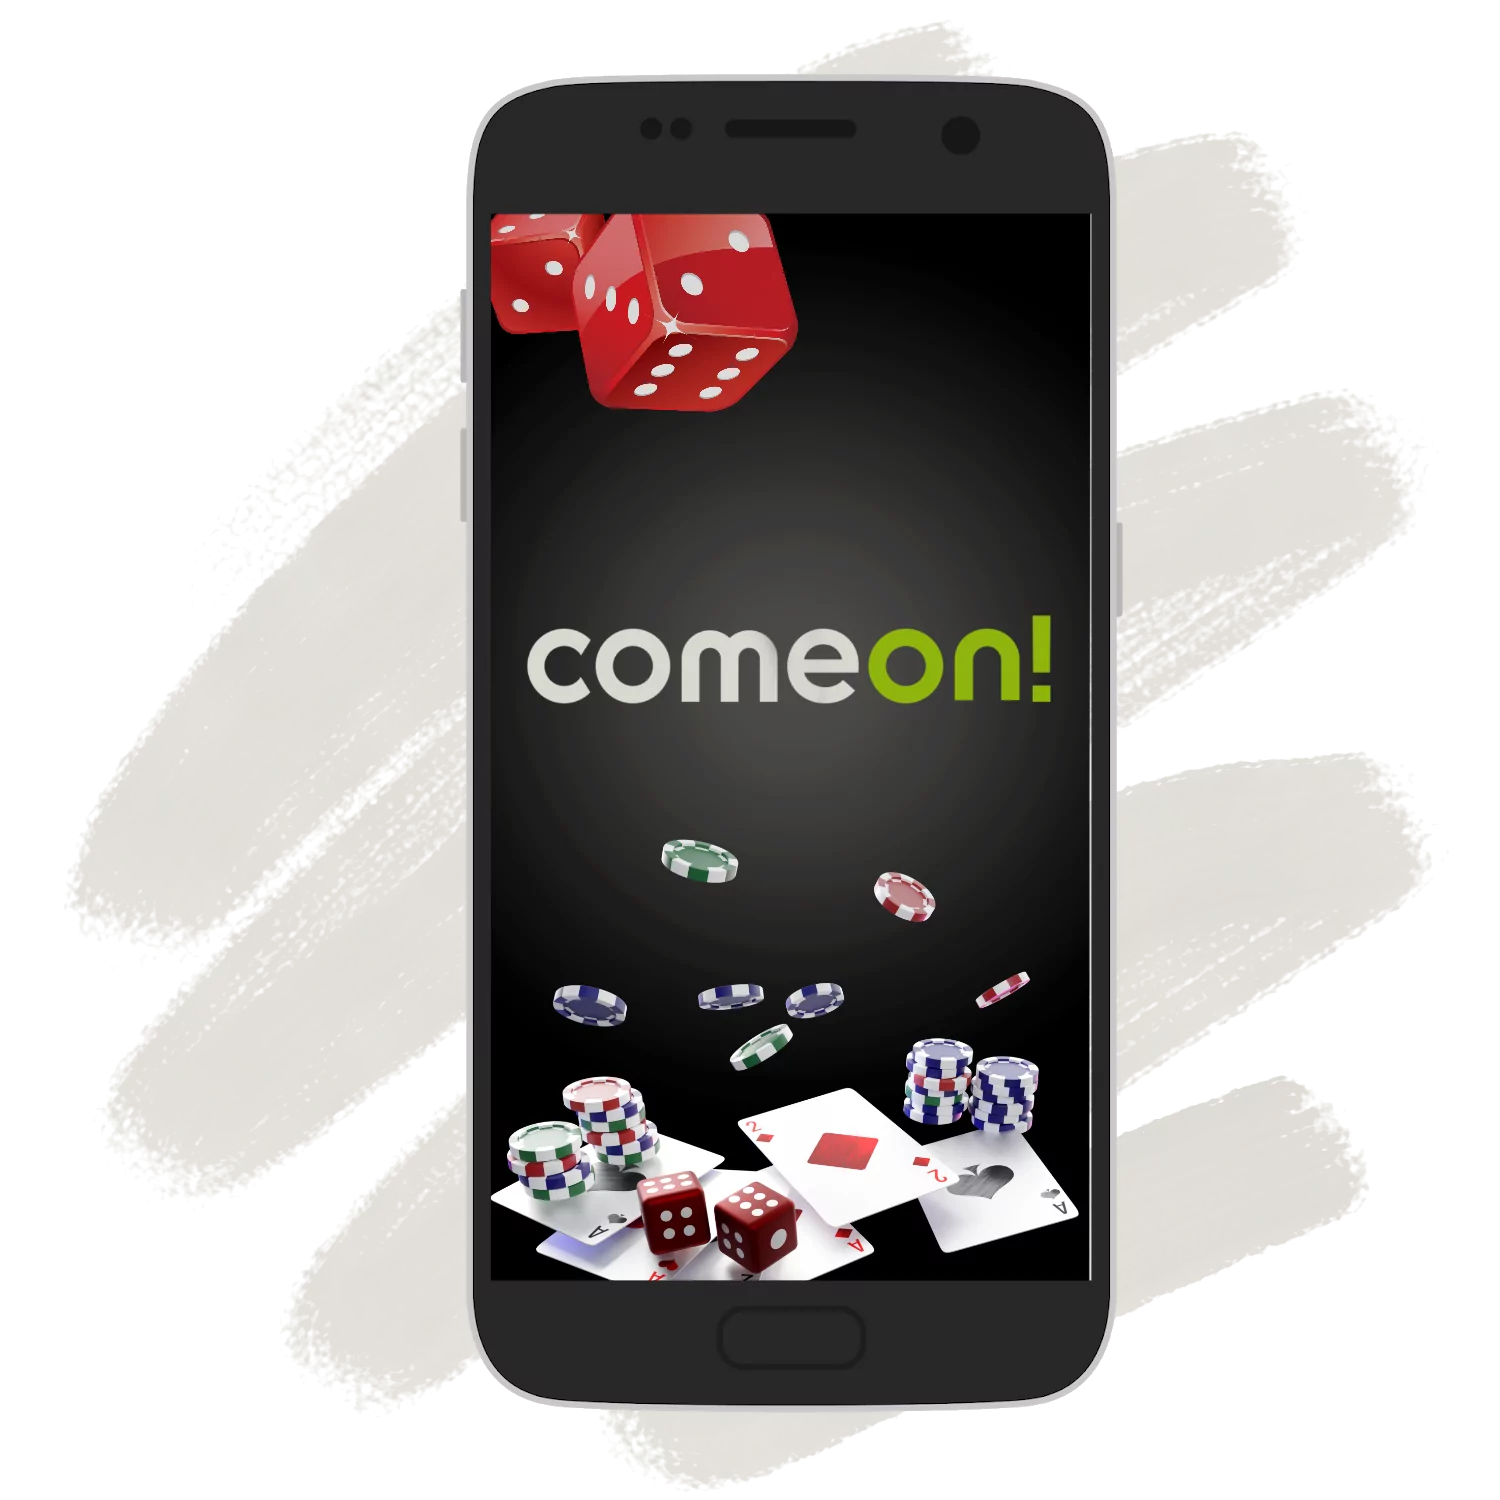 अपने Android या iOS फोन पर Comeon एप डाउनलोड करें और मोबाइल पर सट्टा लगाना शुरू करें।